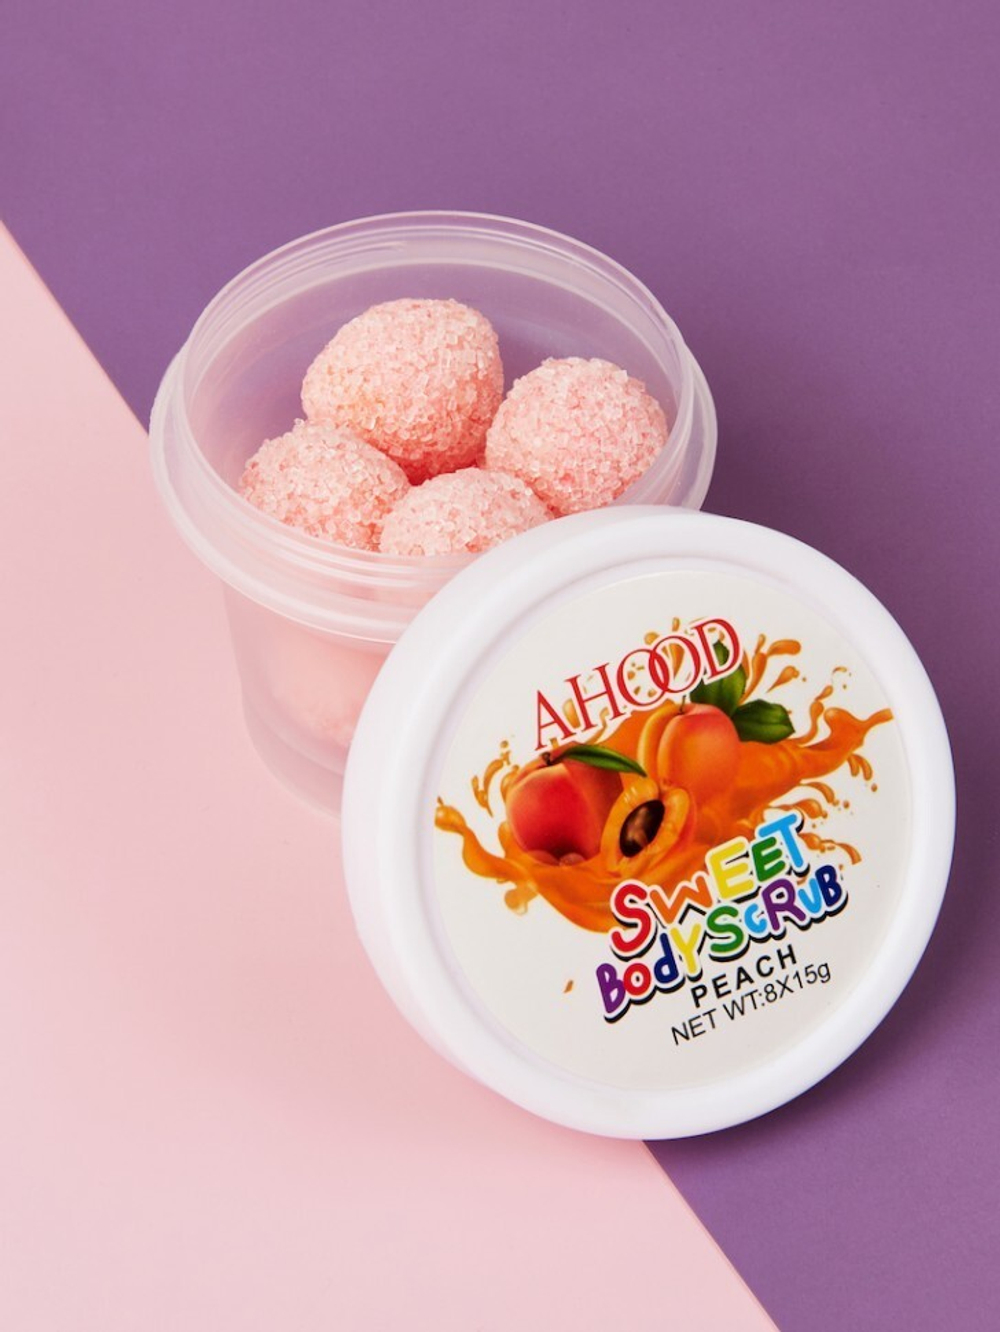 Cкраб для тела Ahood Sweet Body Scrub Peach сахарный Персик 8 шариков